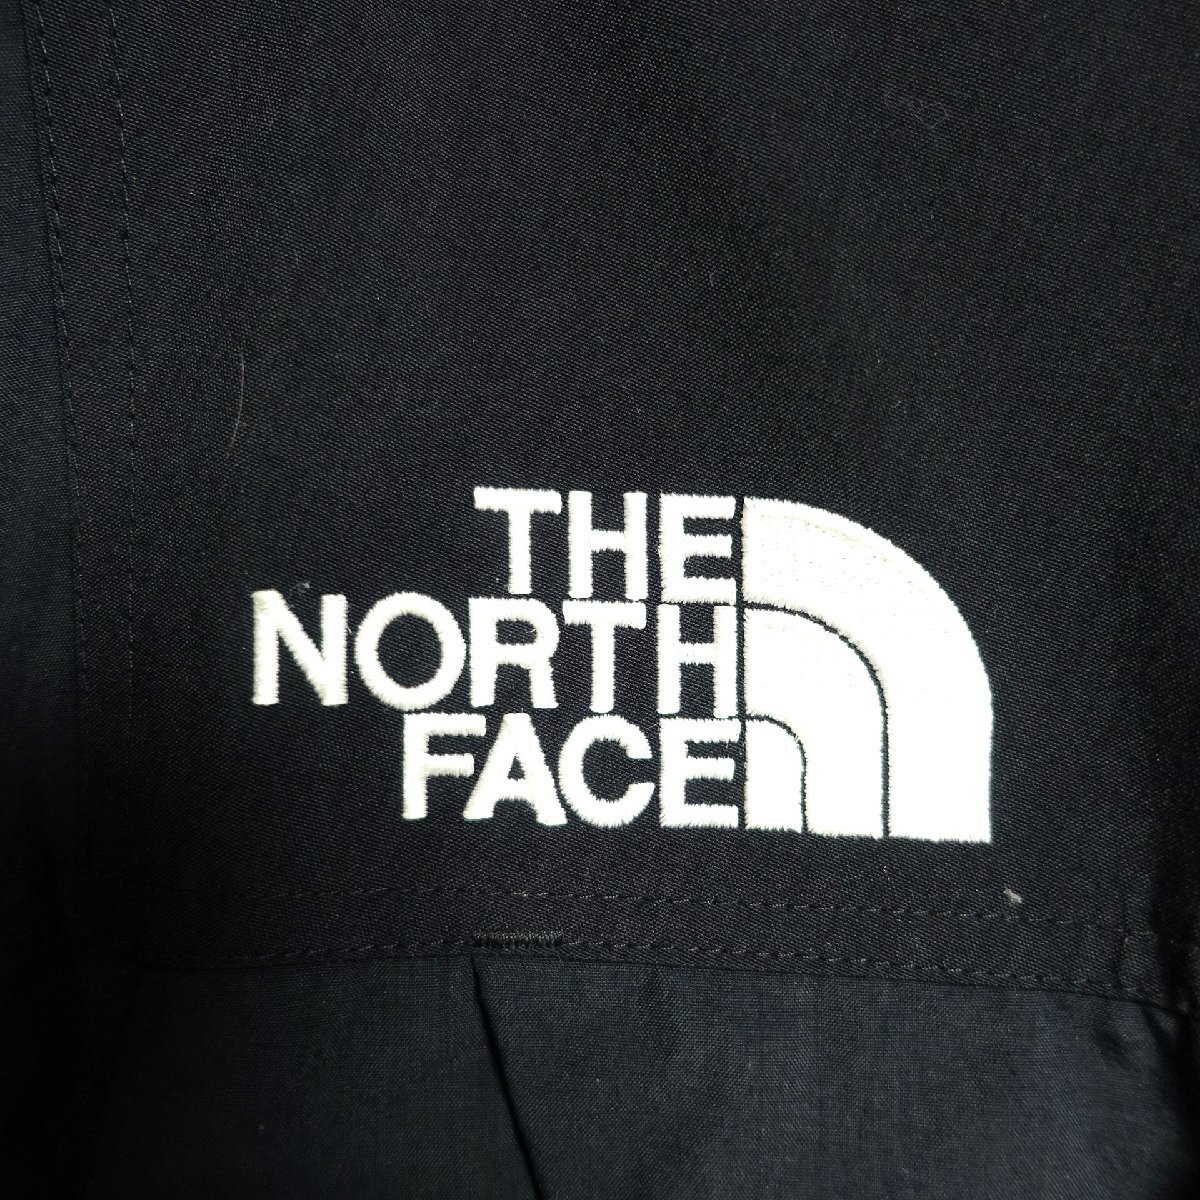 THE NORTH FACE ノースフェイス ゴアテックス GORE-TEX マウンテンパーカー メンズ Lサイズ 正規品 ブラック A4901_画像4